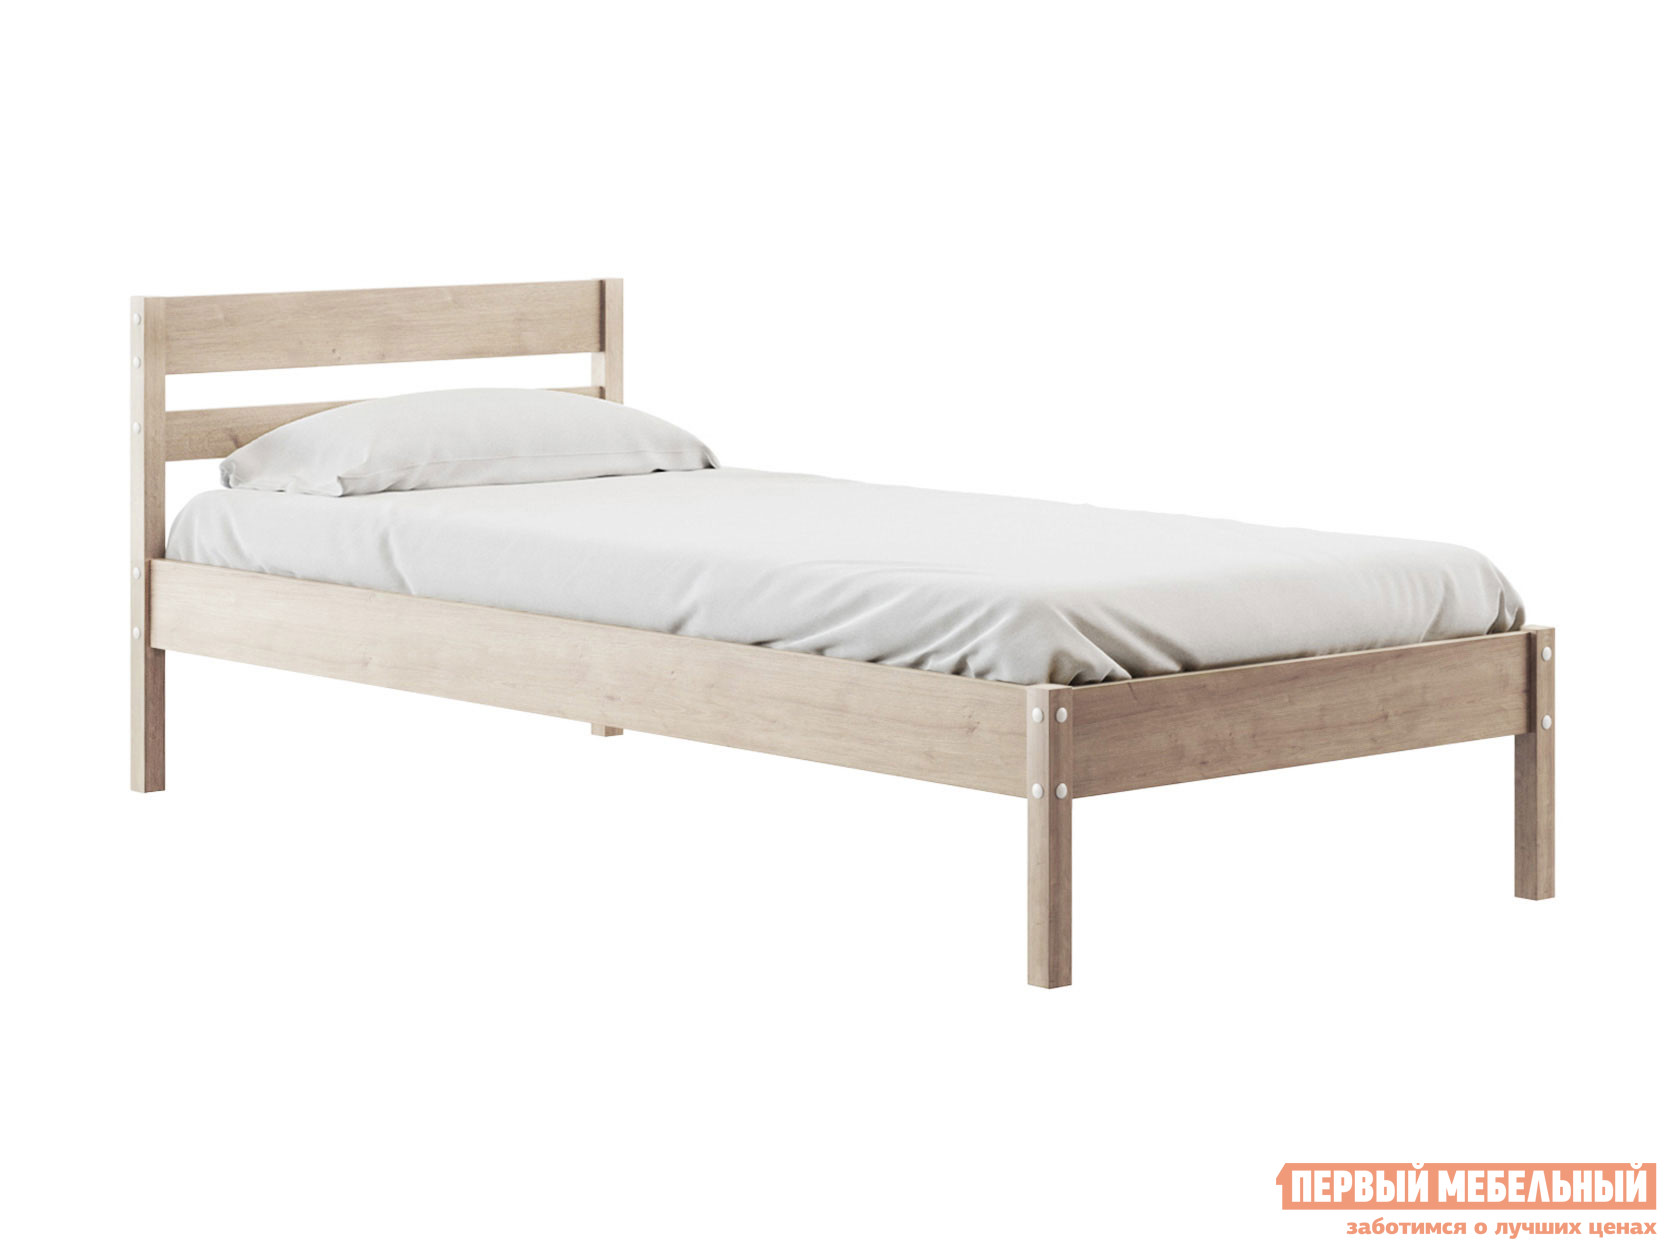 Двуспальная кровать  Эко Натуральный, 90х200 см, 24 см